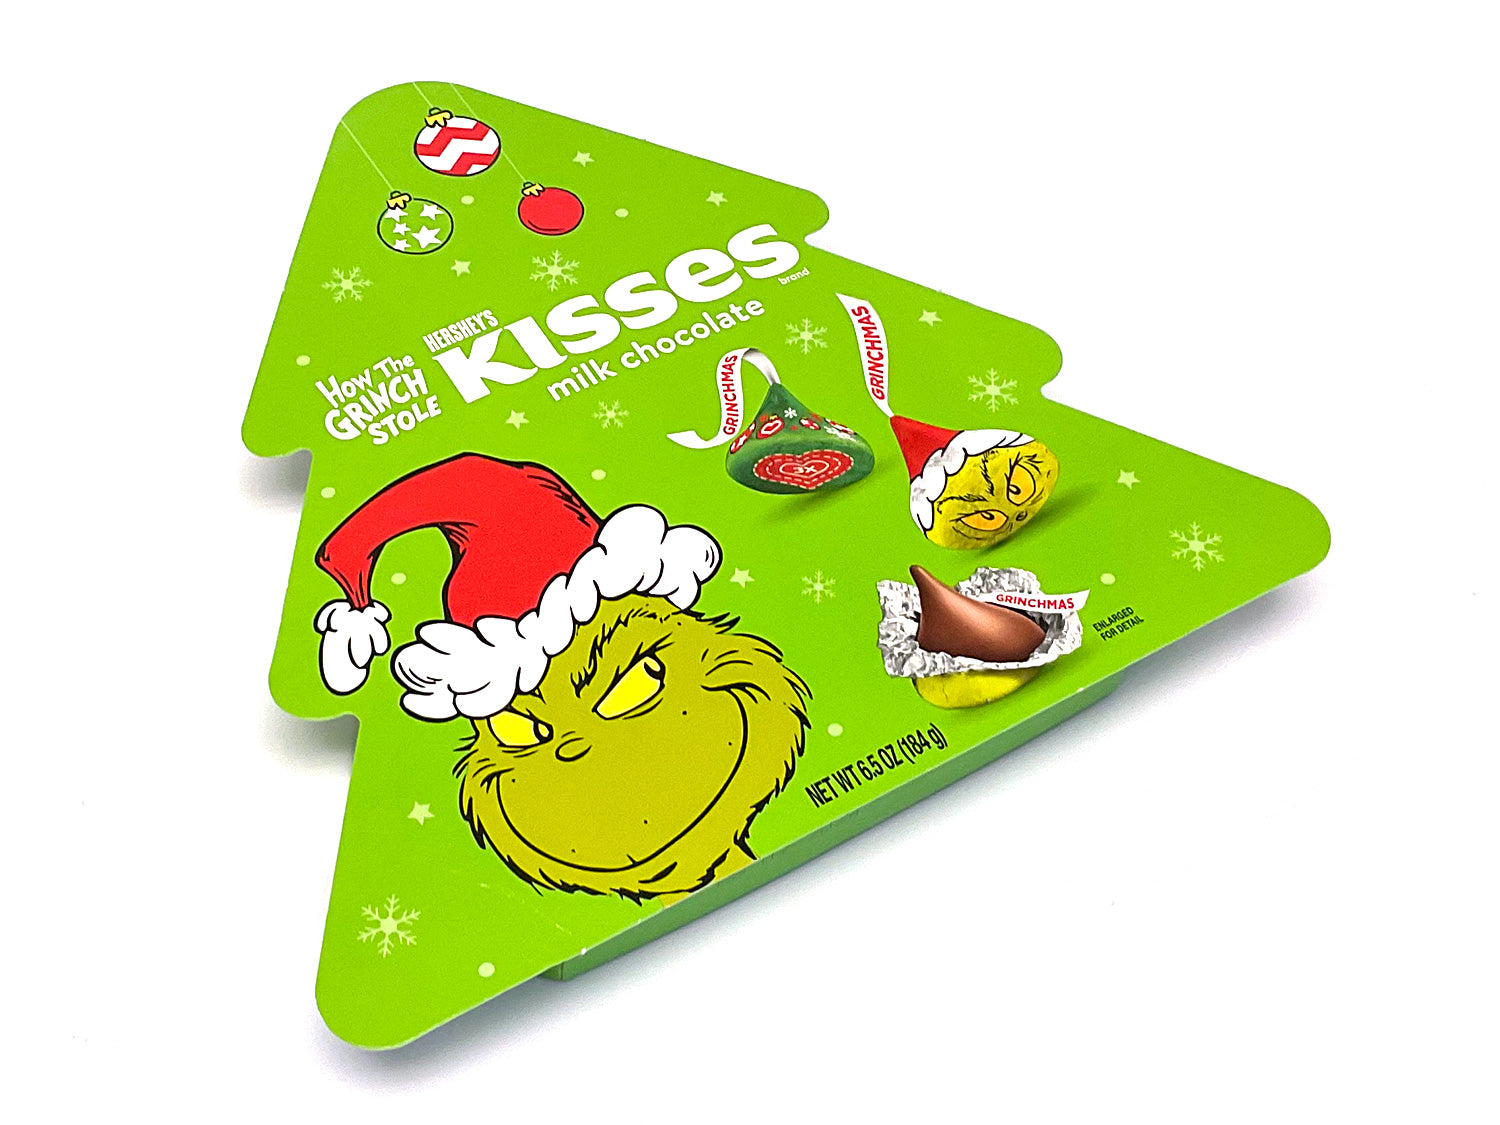 Grinch Hershey's Kisses Tree Box - 6.5 oz